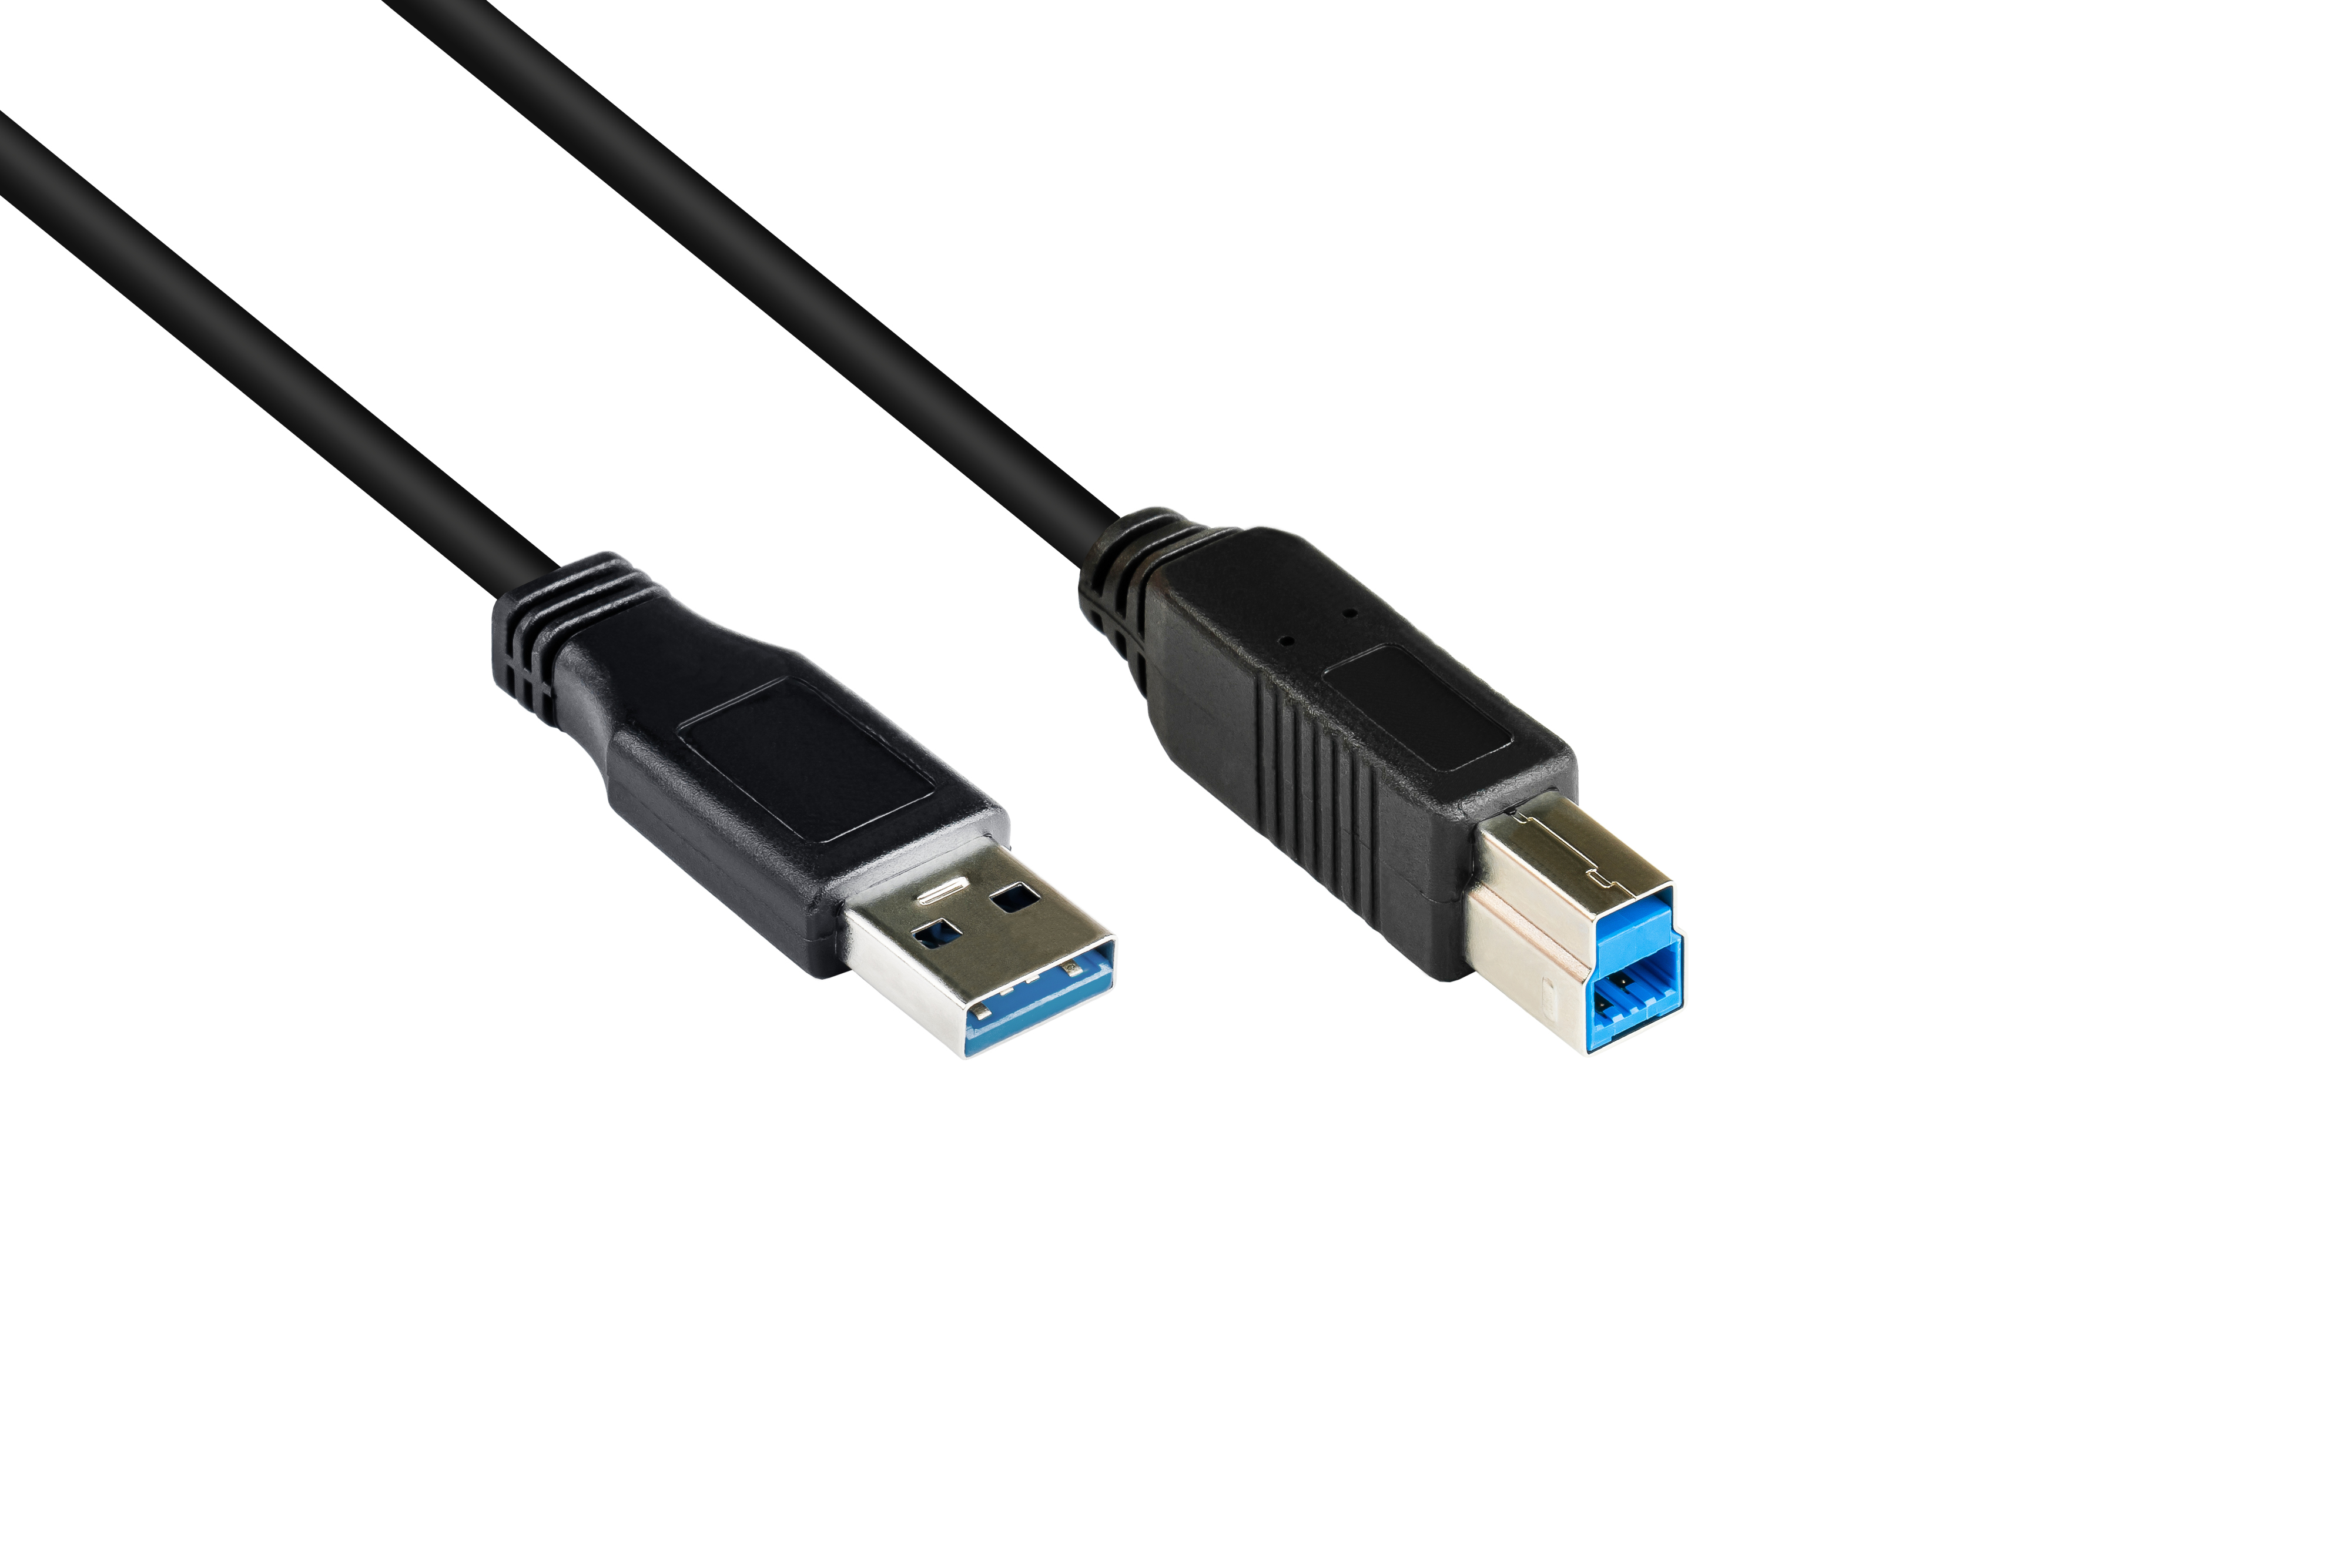 A B, schwarz 3.0 Anschlusskabel an Stecker USB GOOD Stecker CONNECTIONS